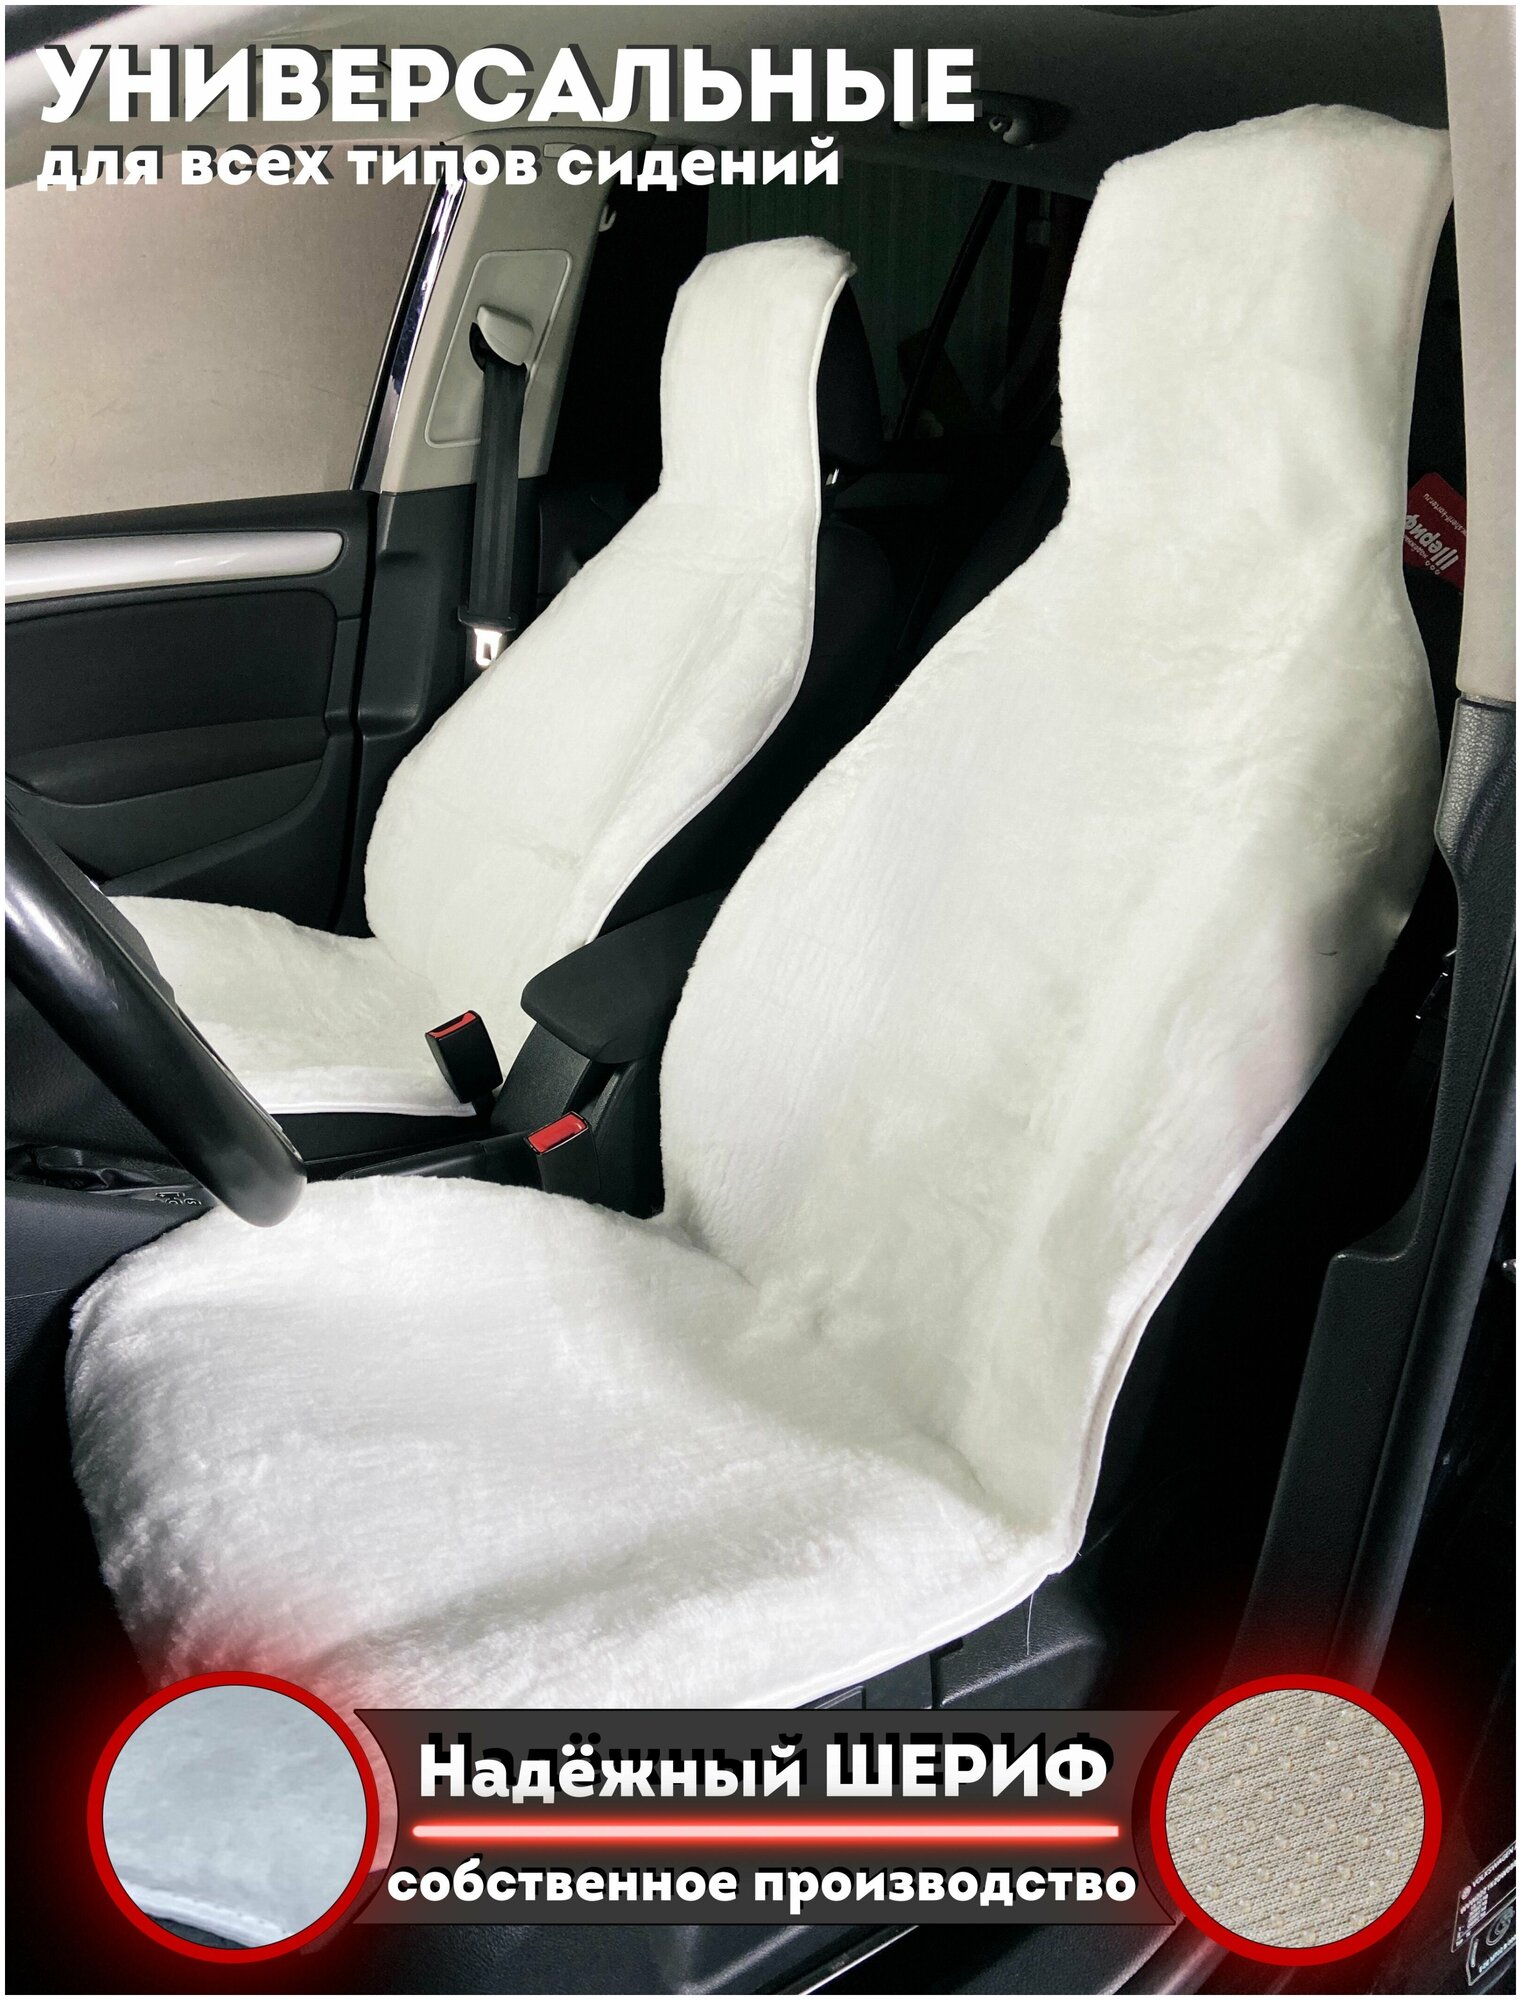 Меховые накидки на передние сиденья автомобиля белые Надежный шериф / комплект 2шт. / размер 145х55см